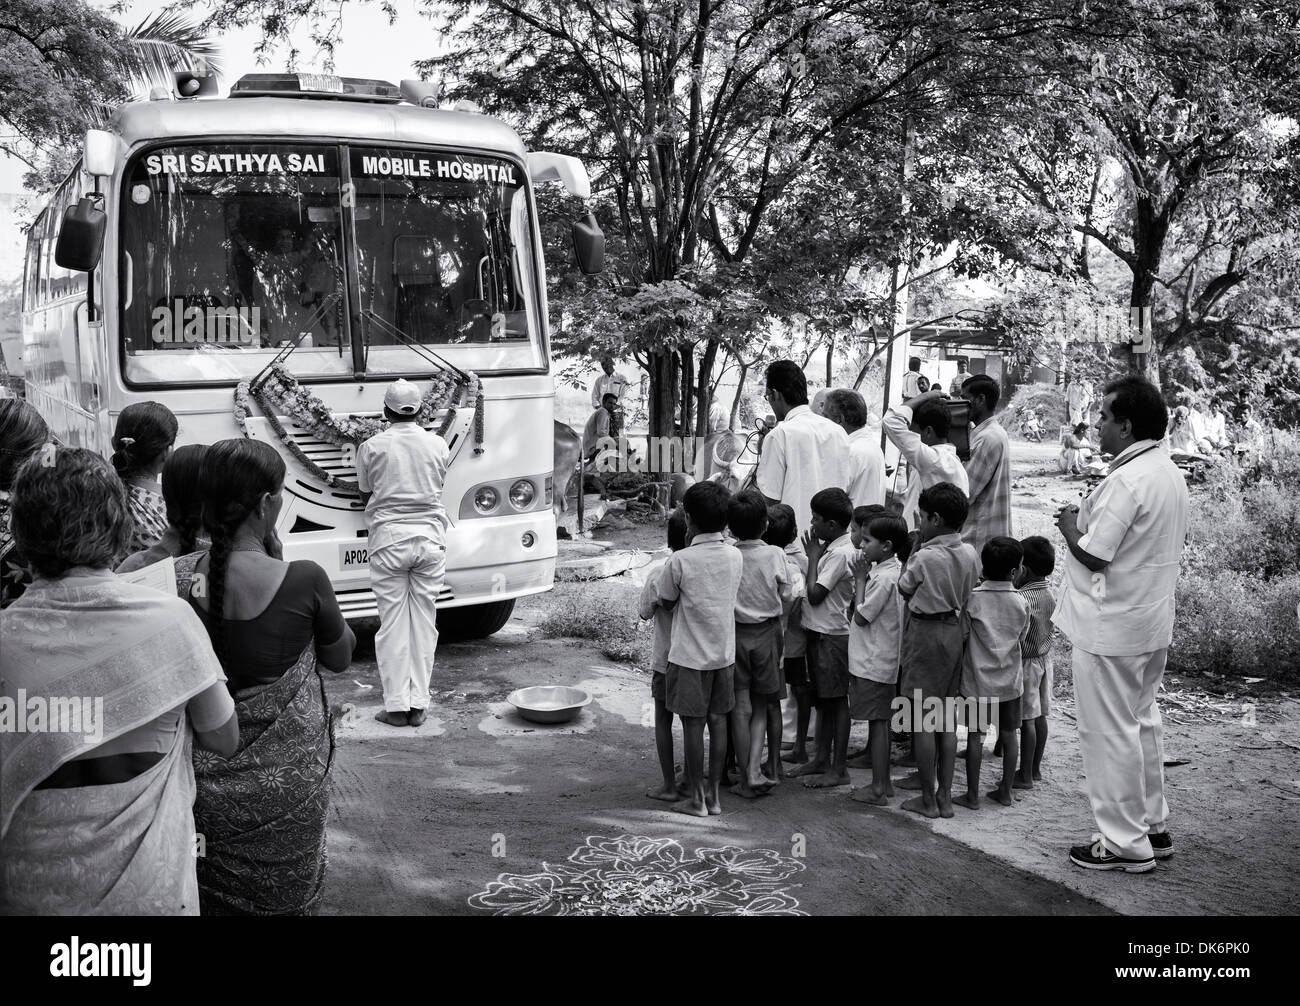 Sri Sathya Sai Baba mobile aufsuchende Krankenhaus Klinik Servicebus in einer indischen Dorf-Schule. Andhra Pradesh, Indien. Stockfoto